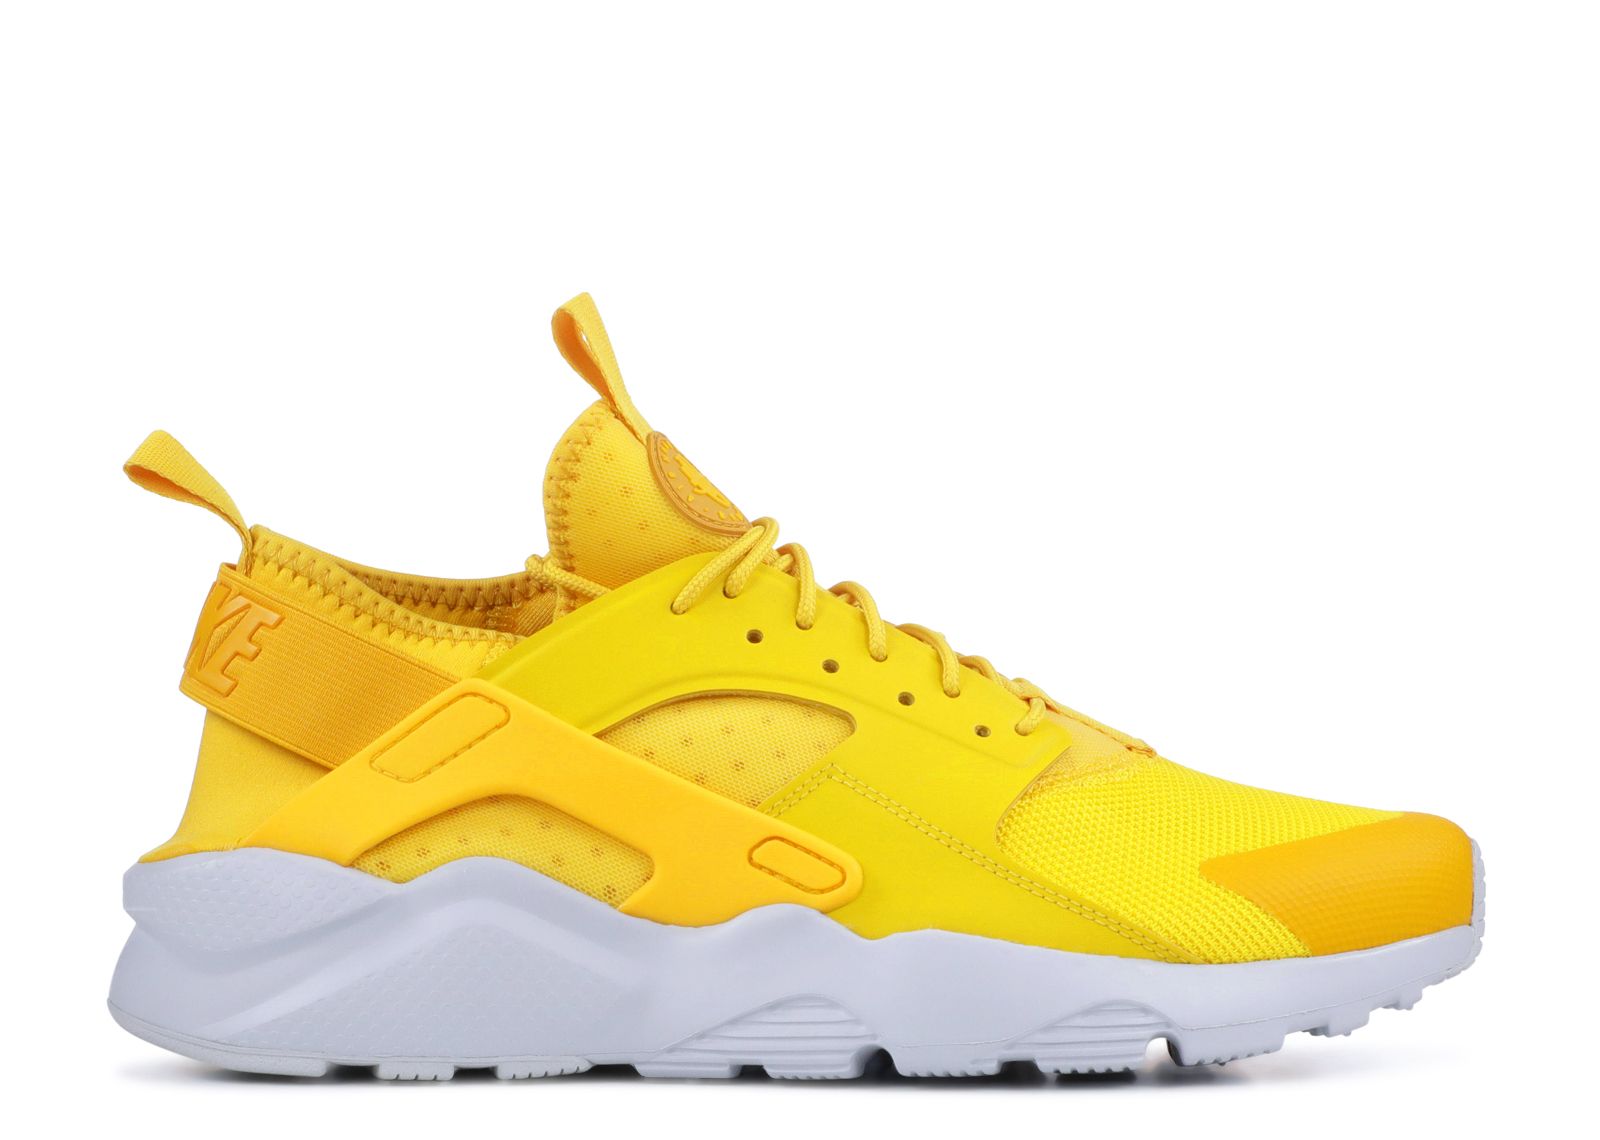 Air Huarache Run Ultra 'Yellow' - Nike - 819685 700 - mineral